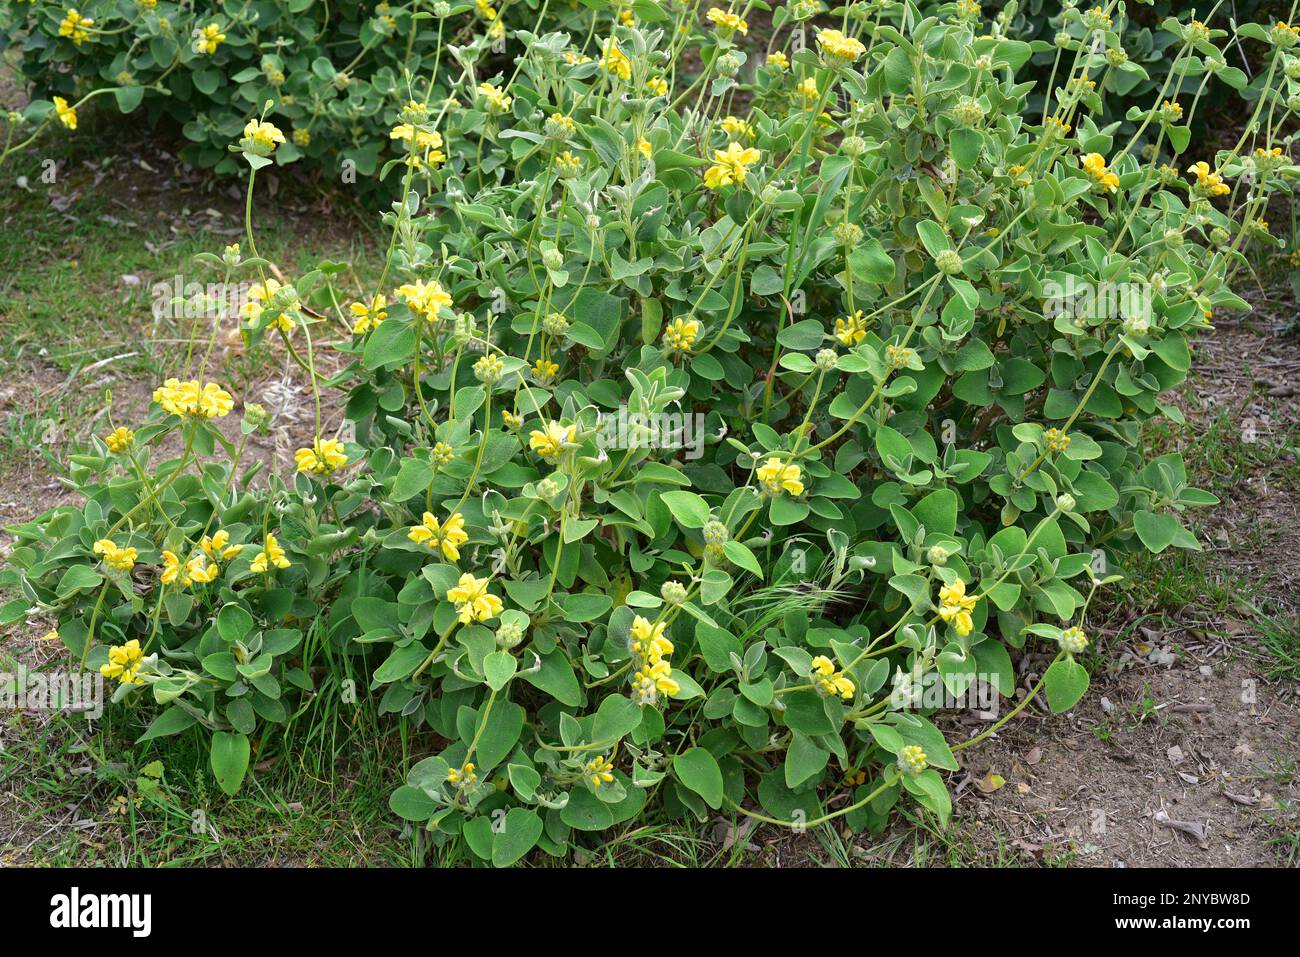 La salvia de Jerusalén de hoja dorada (Phlomis chrysophylla) es un arbusto de hoja perenne nativo del suroeste de Asia. Planta floreciente. Foto de stock